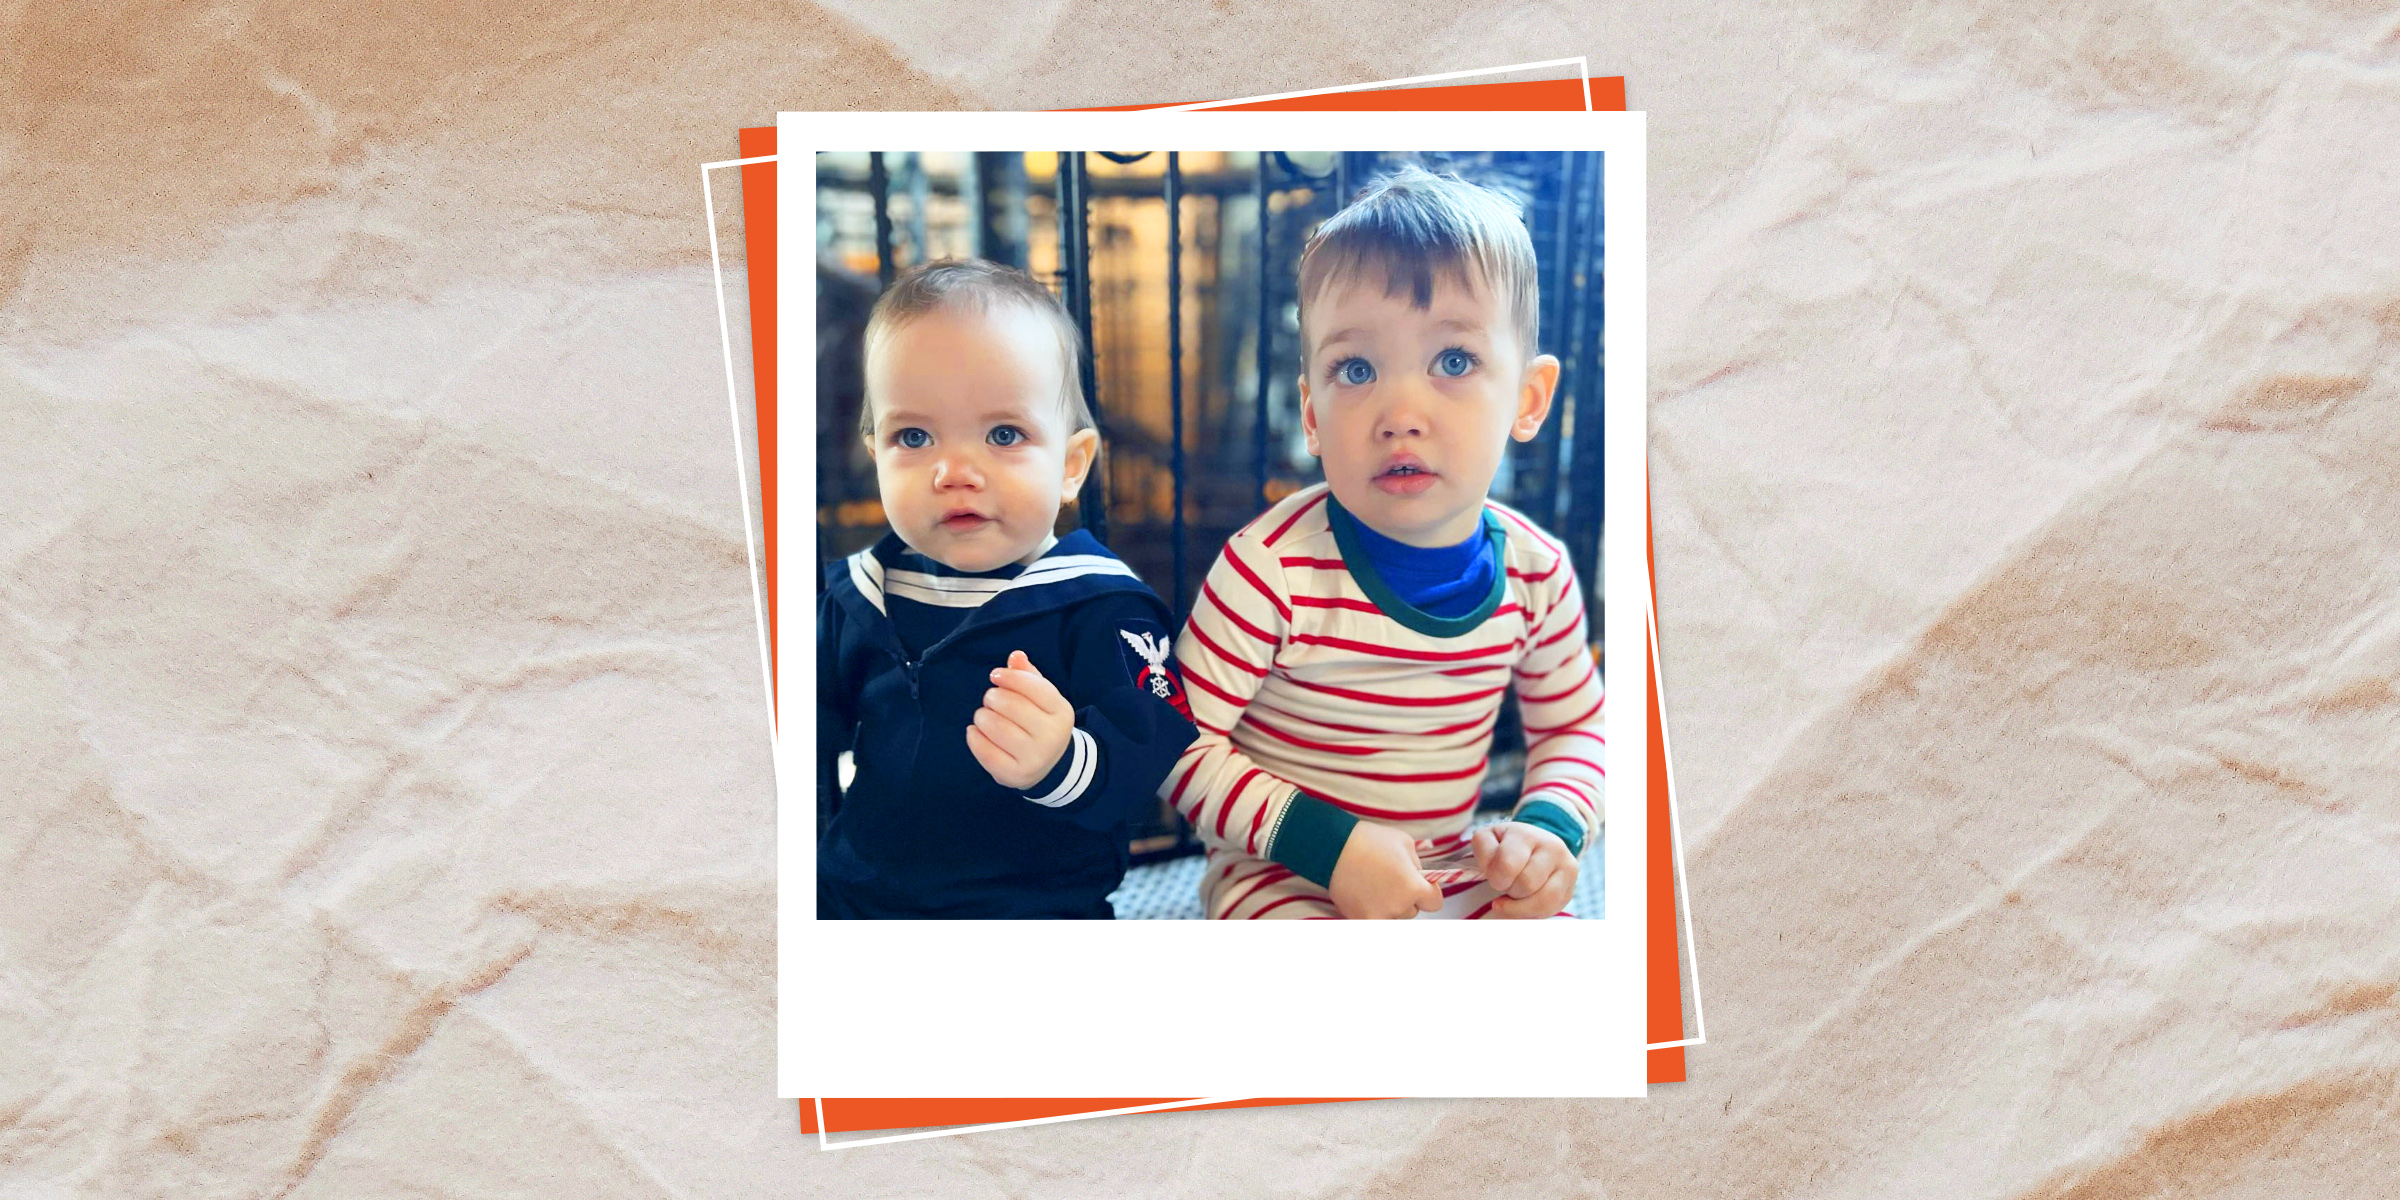 Anderson Cooper children Wyatt and Sebastian | Source: Instagram.om/andersoncooper